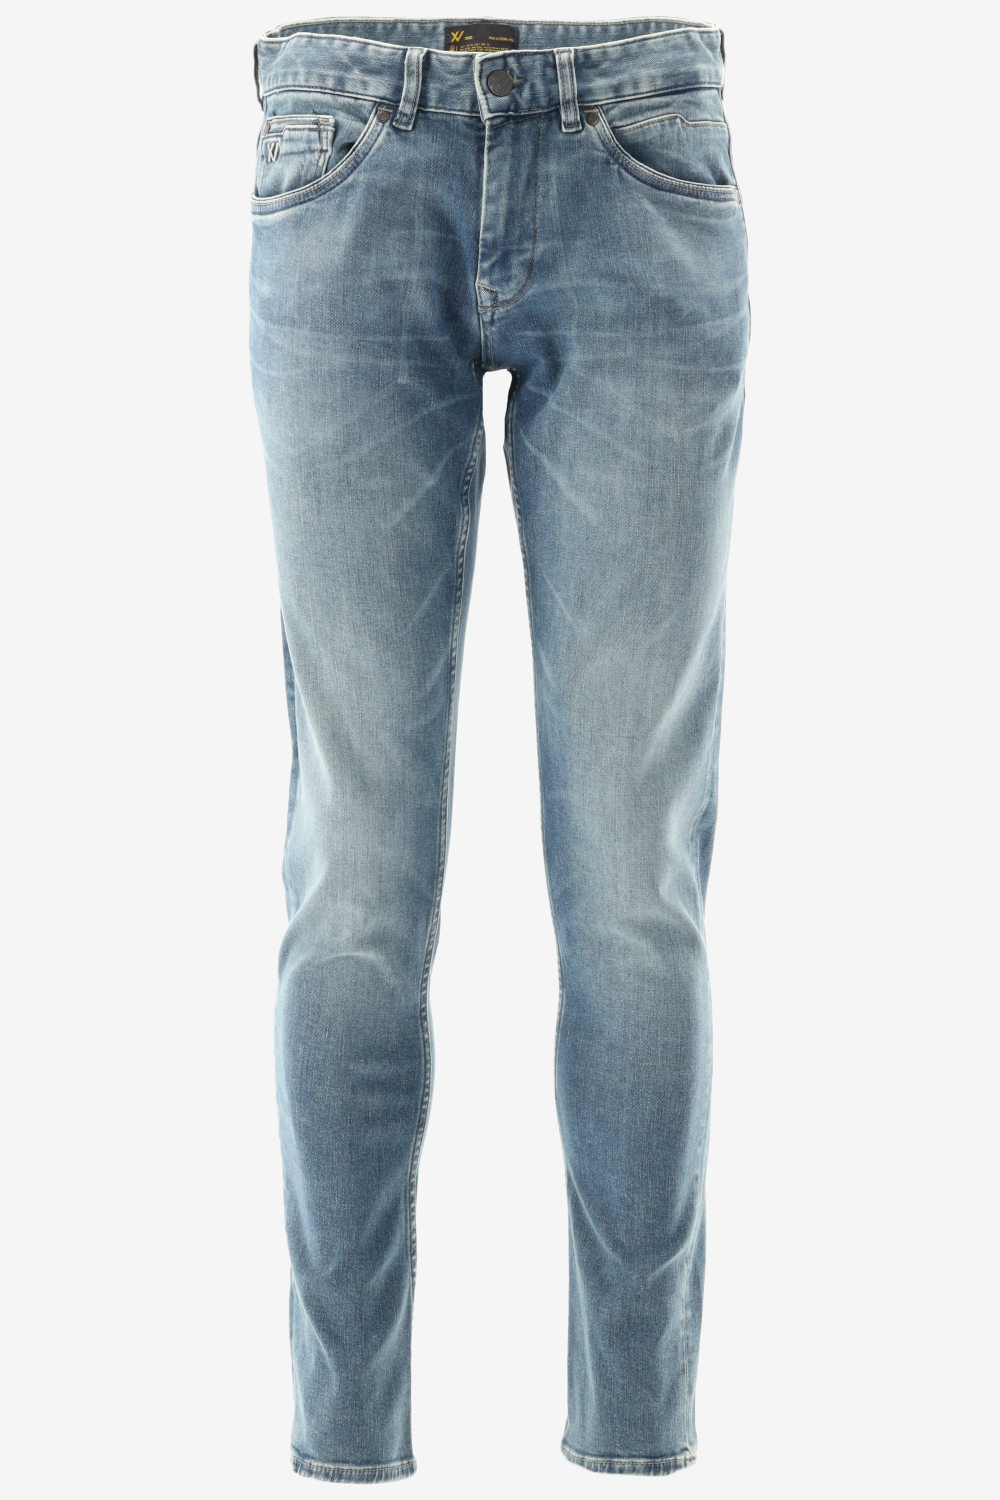 Herenkleding Jeans Pme Slim Webshop - Legend Fit | VERZENDING! Outlet - GRATIS Bergmans XV Fashion